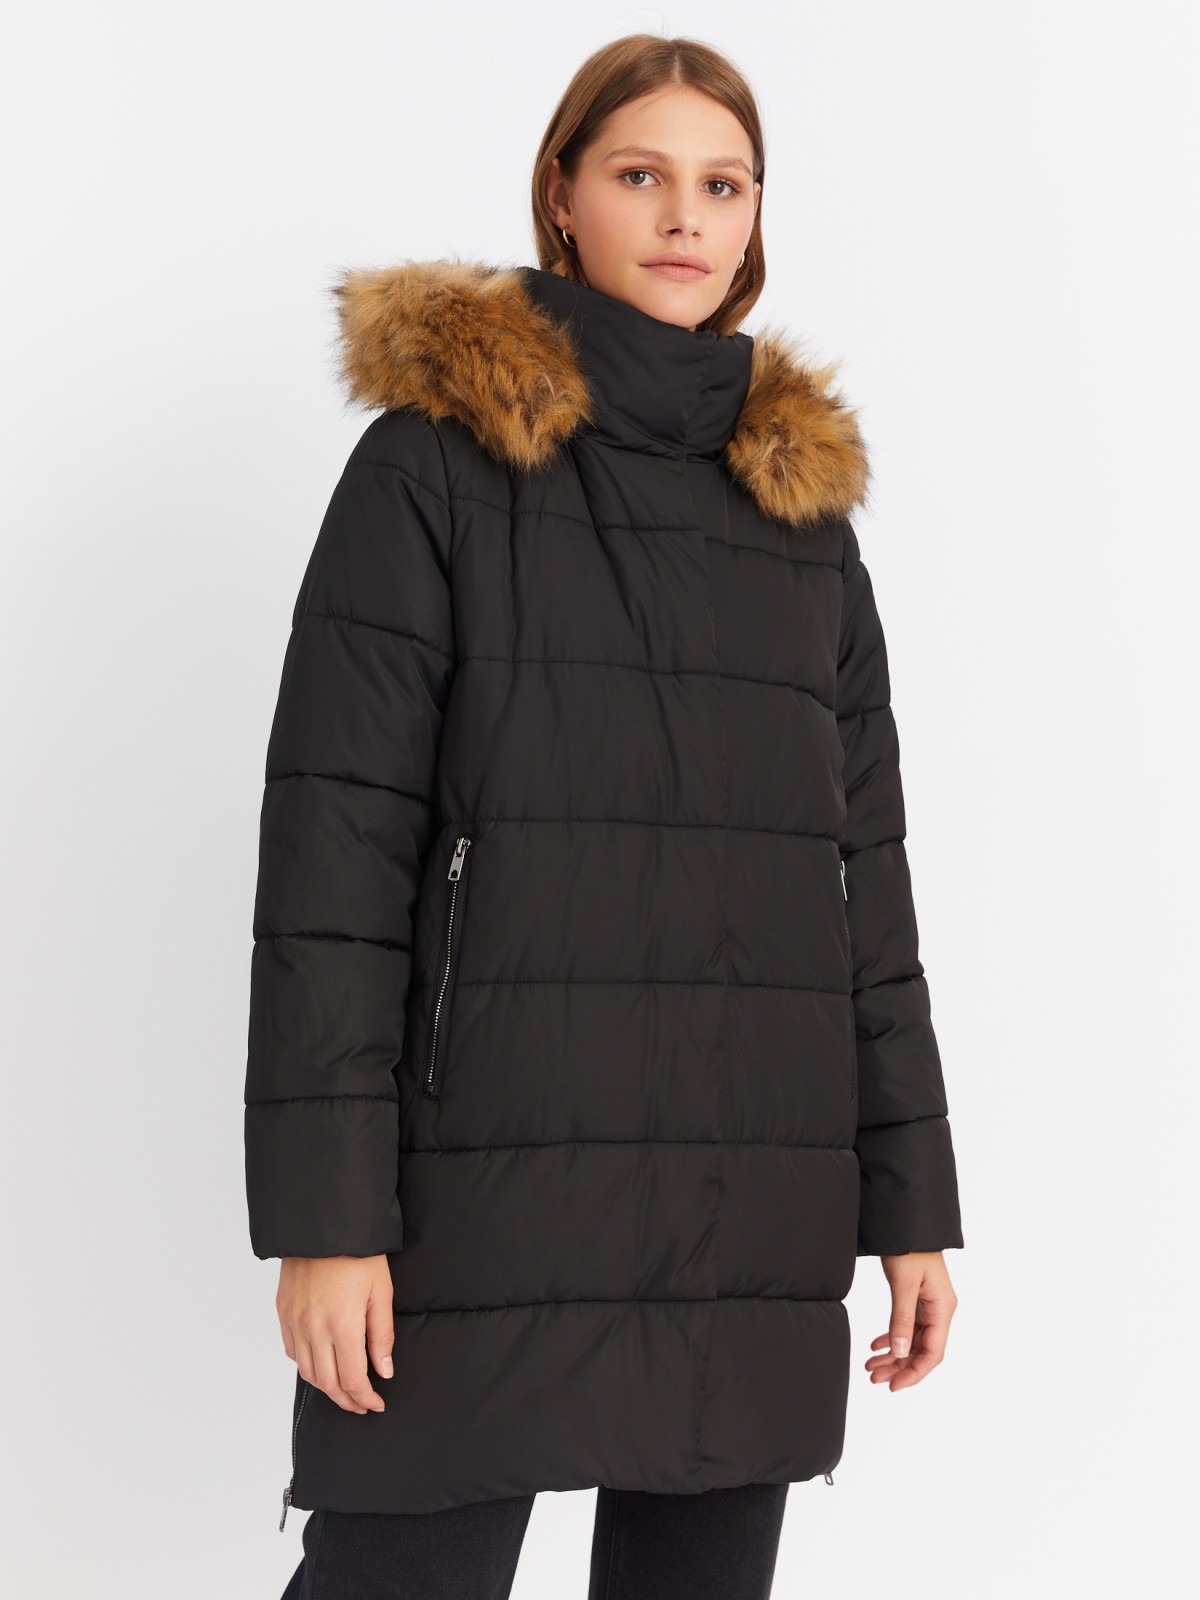 Тёплая куртка-пальто с капюшоном и боковыми шлицами на молниях zolla 022425212014, цвет черный, размер XS - фото 3